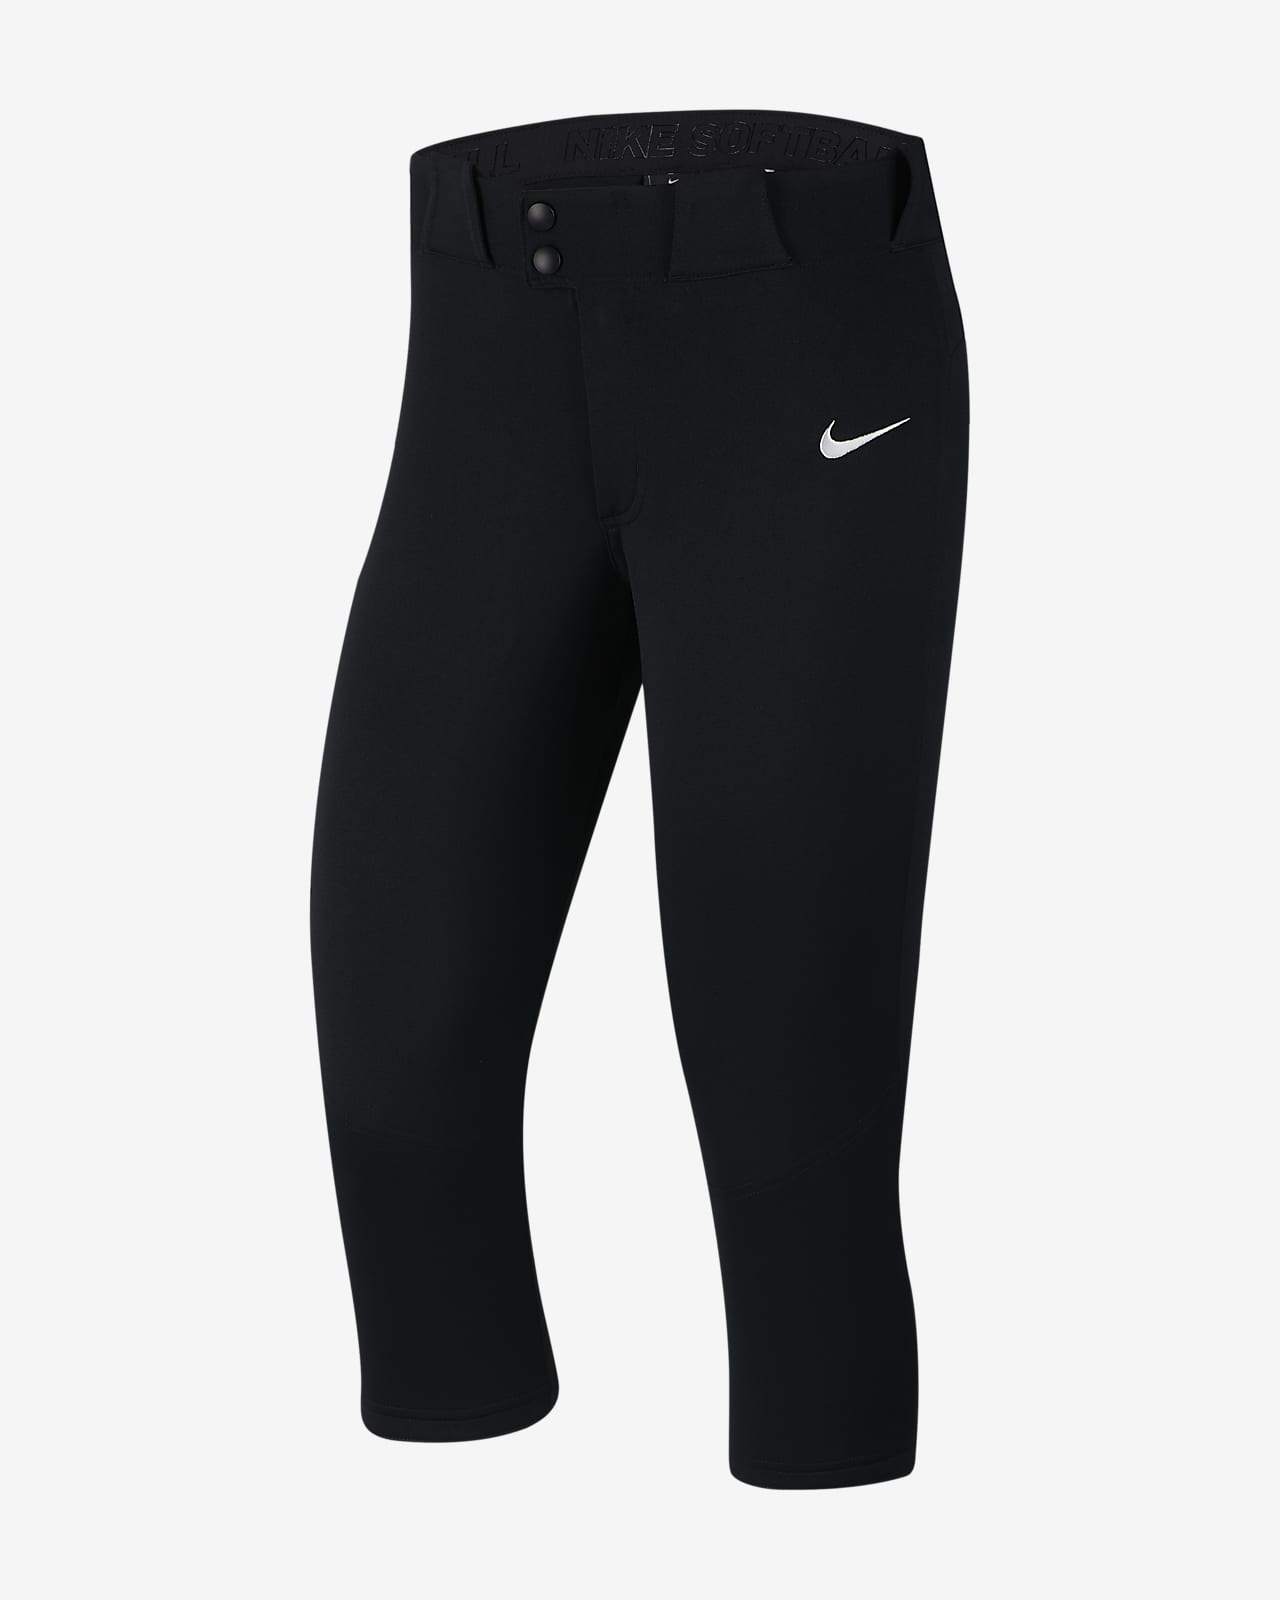 4-Length Softball Pants. Nike 